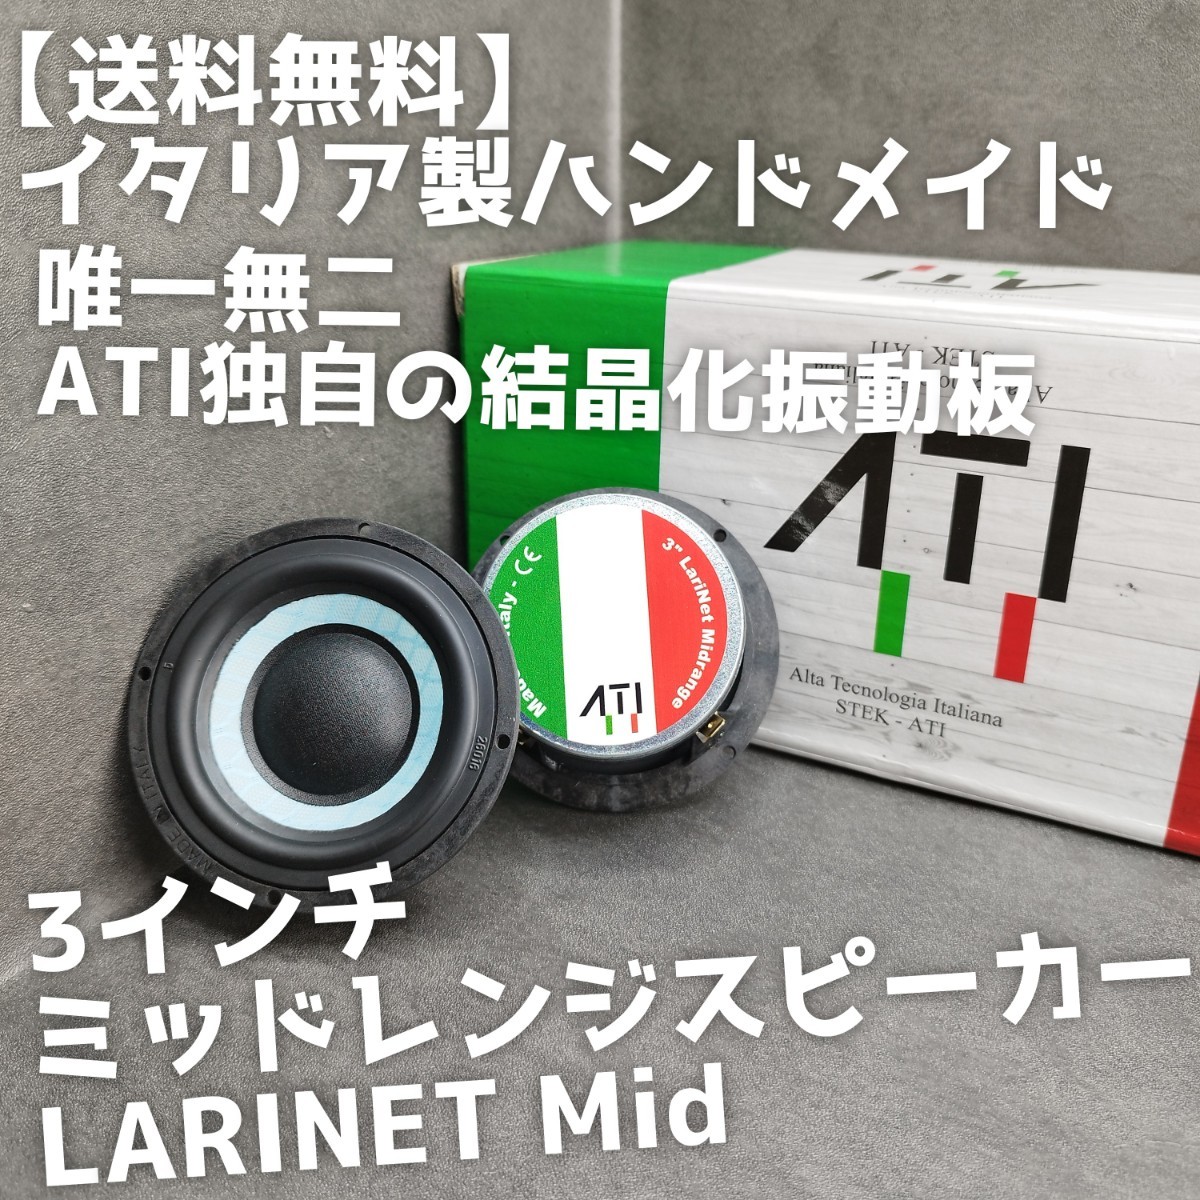 【送料無料】気まぐれ半額【イタリア製】高音質 ATI Italy LARINET Mid 3インチミッドレンジスピーカー スコーカー カーオーディオ 3way化_画像1